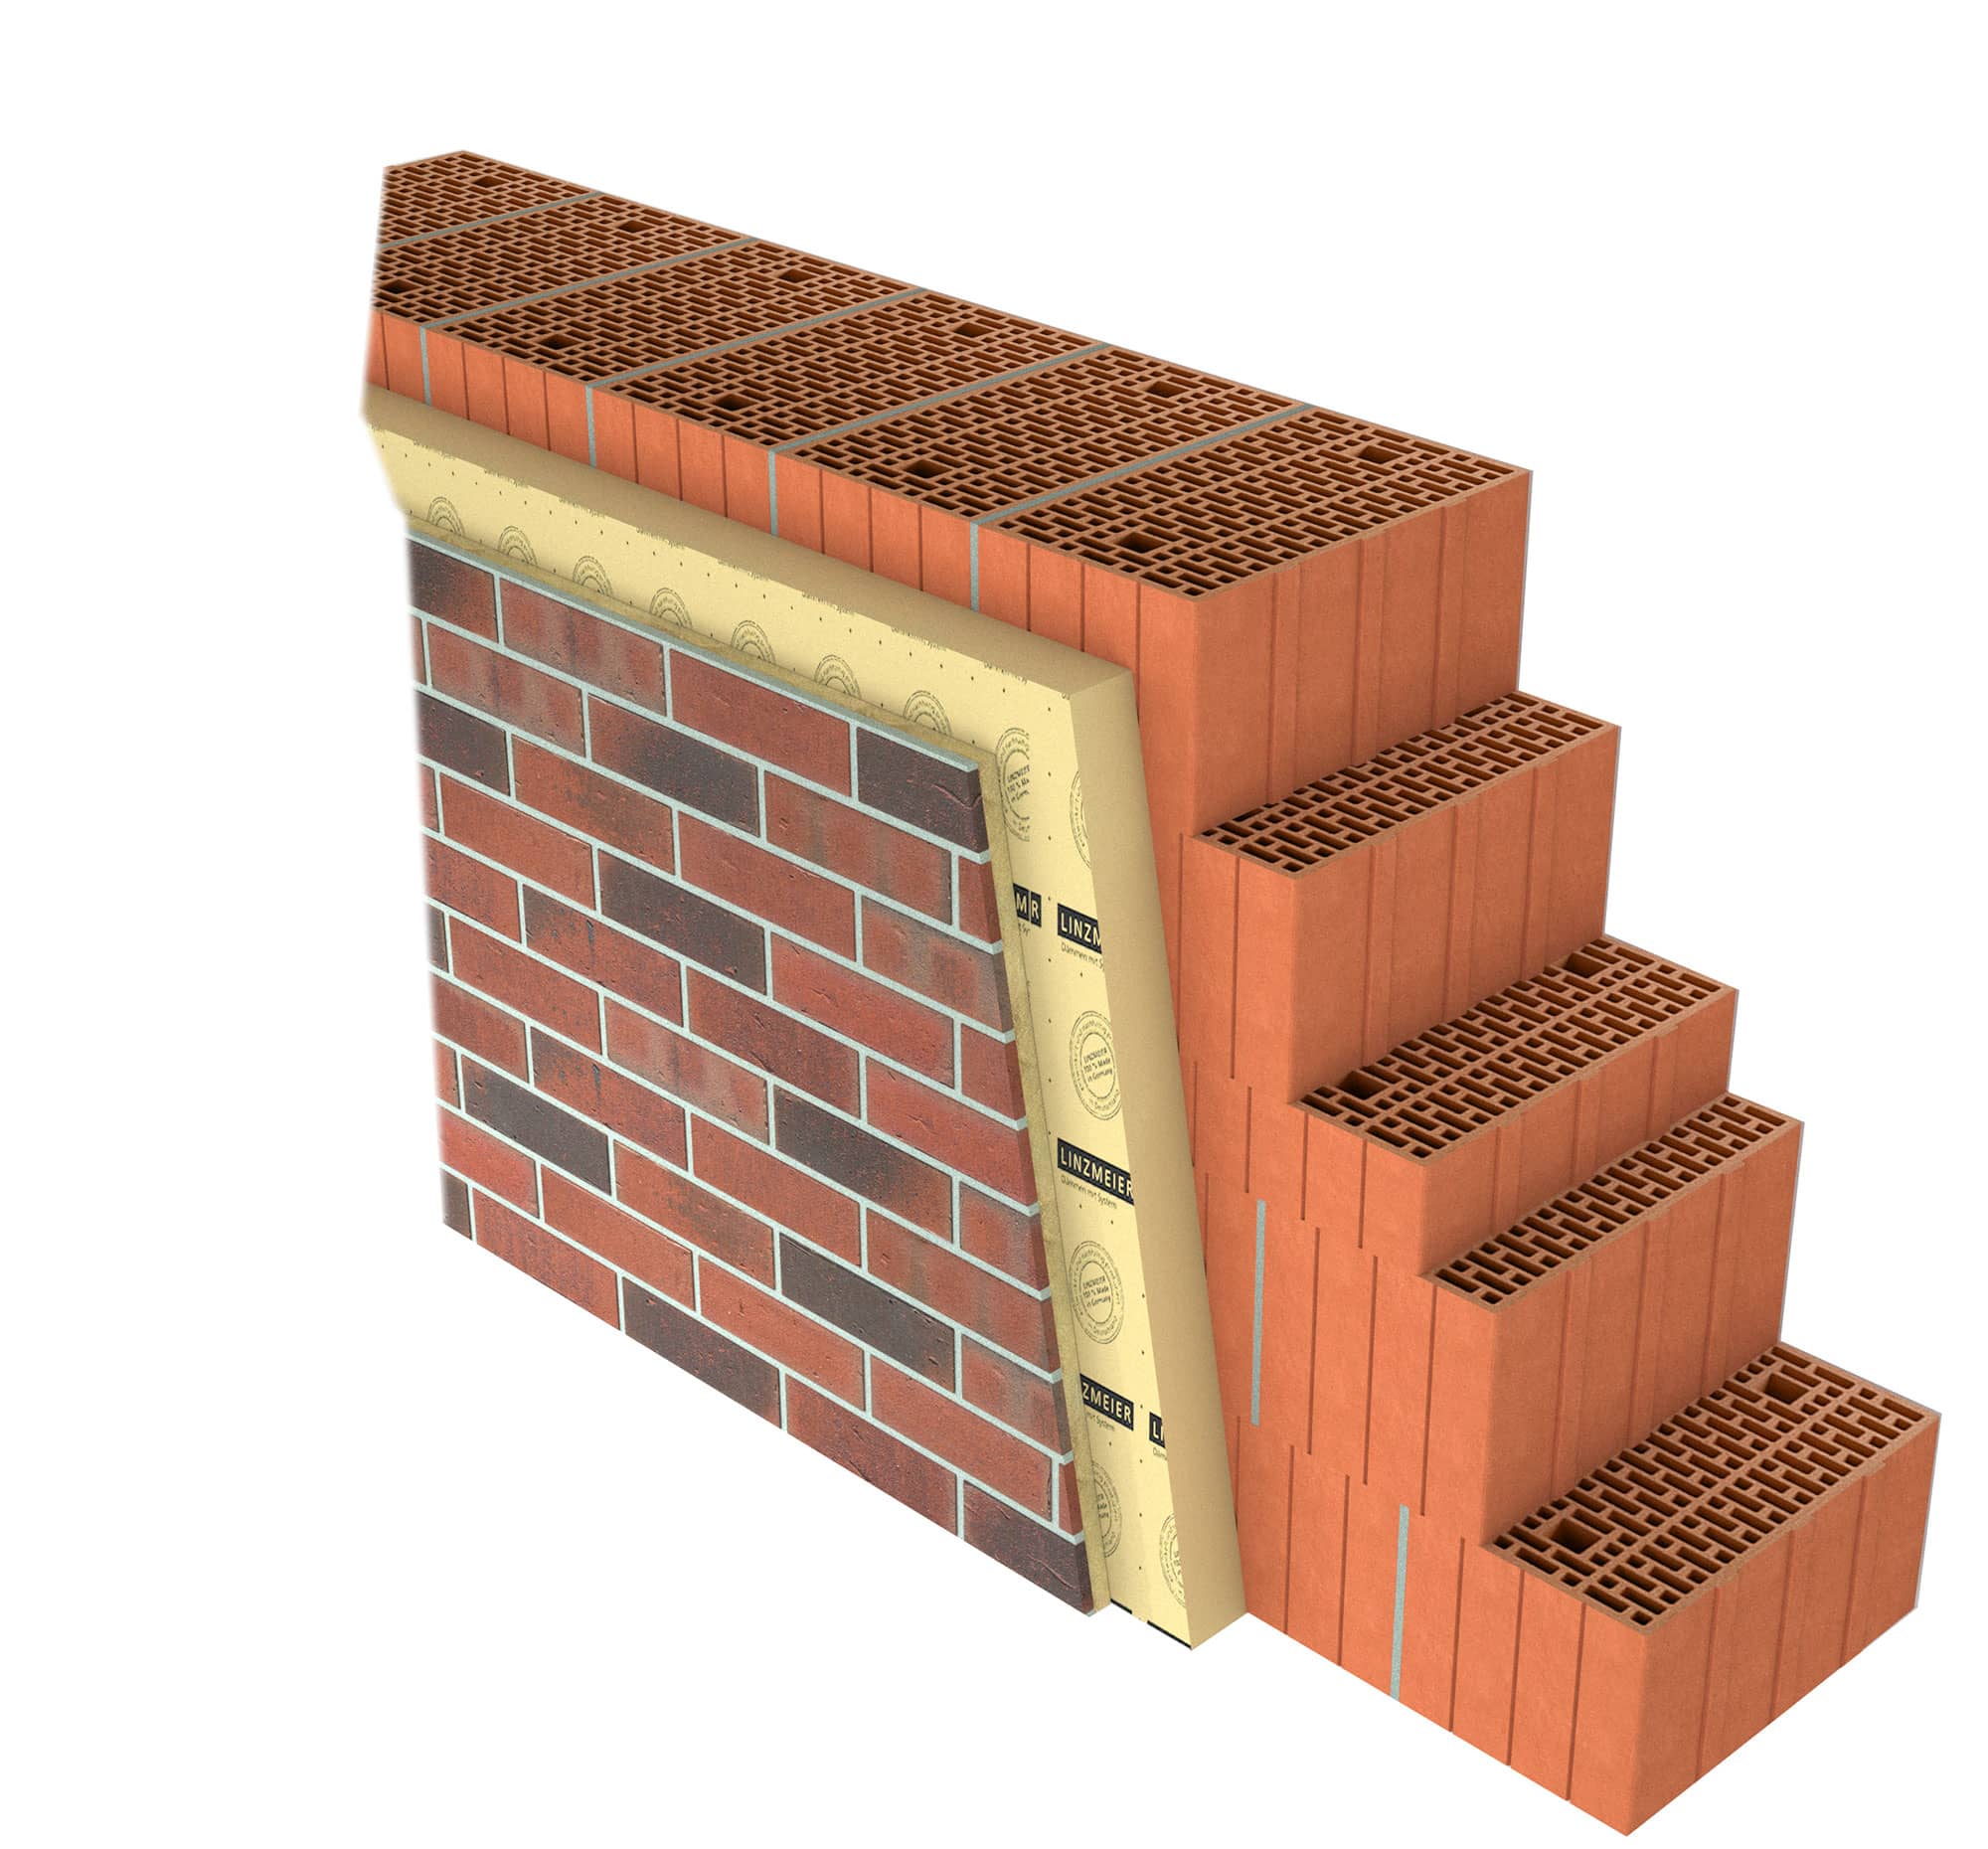 Système kess avec isolation PUR sur brique perforée verticalement